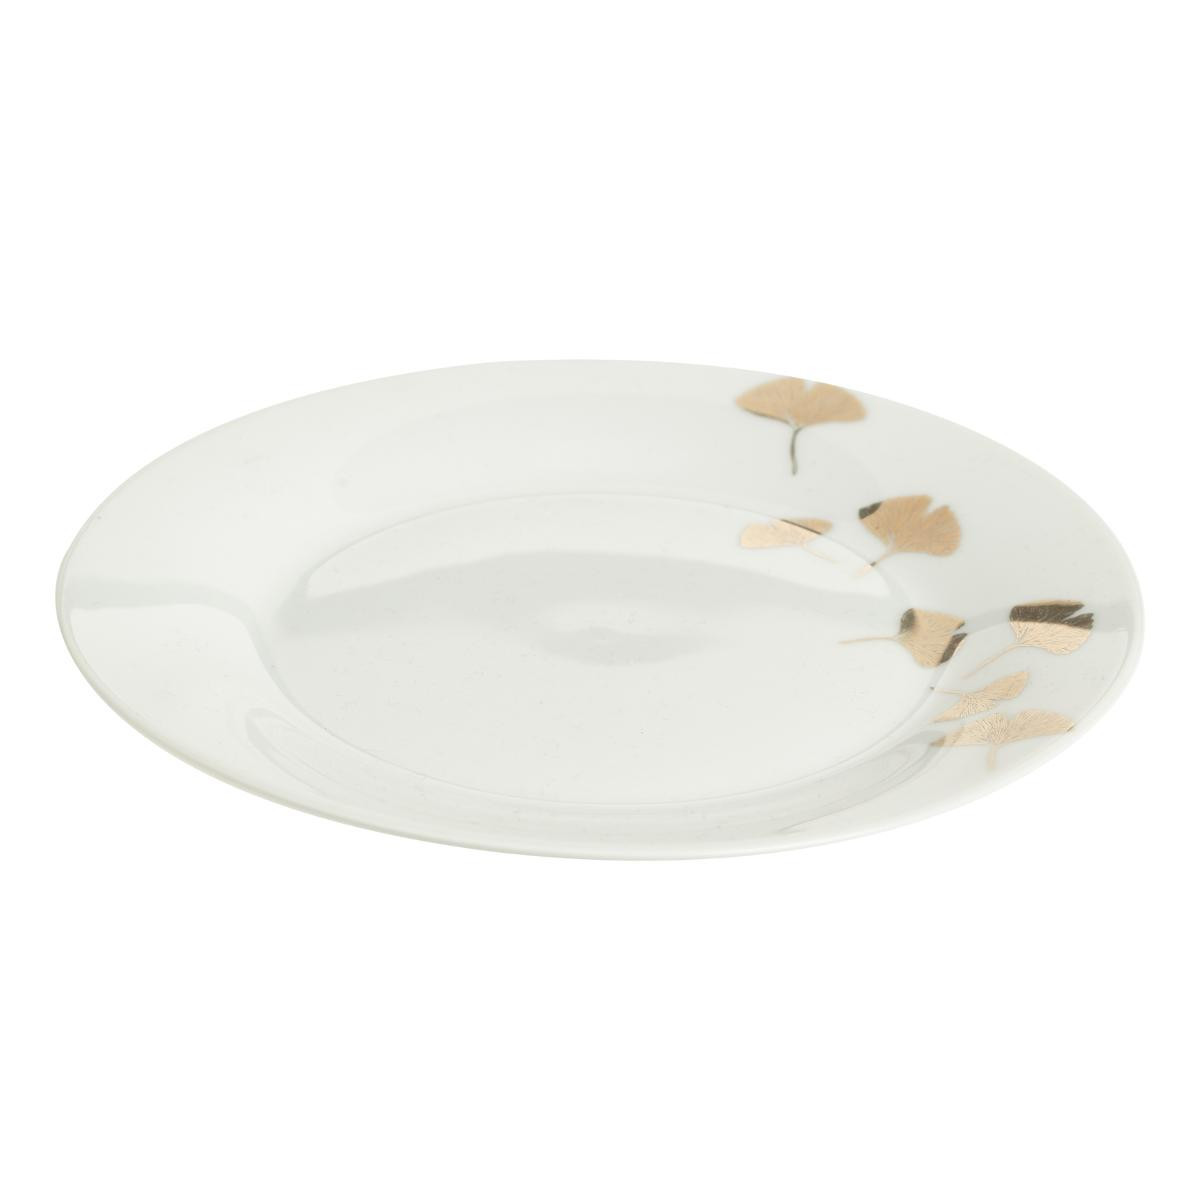 https://www.decomania.fr/706211-product_hd/lot-de-6-assiettes-plates-en-porcelaine-d-27-cm-decor-gingko-or.jpg